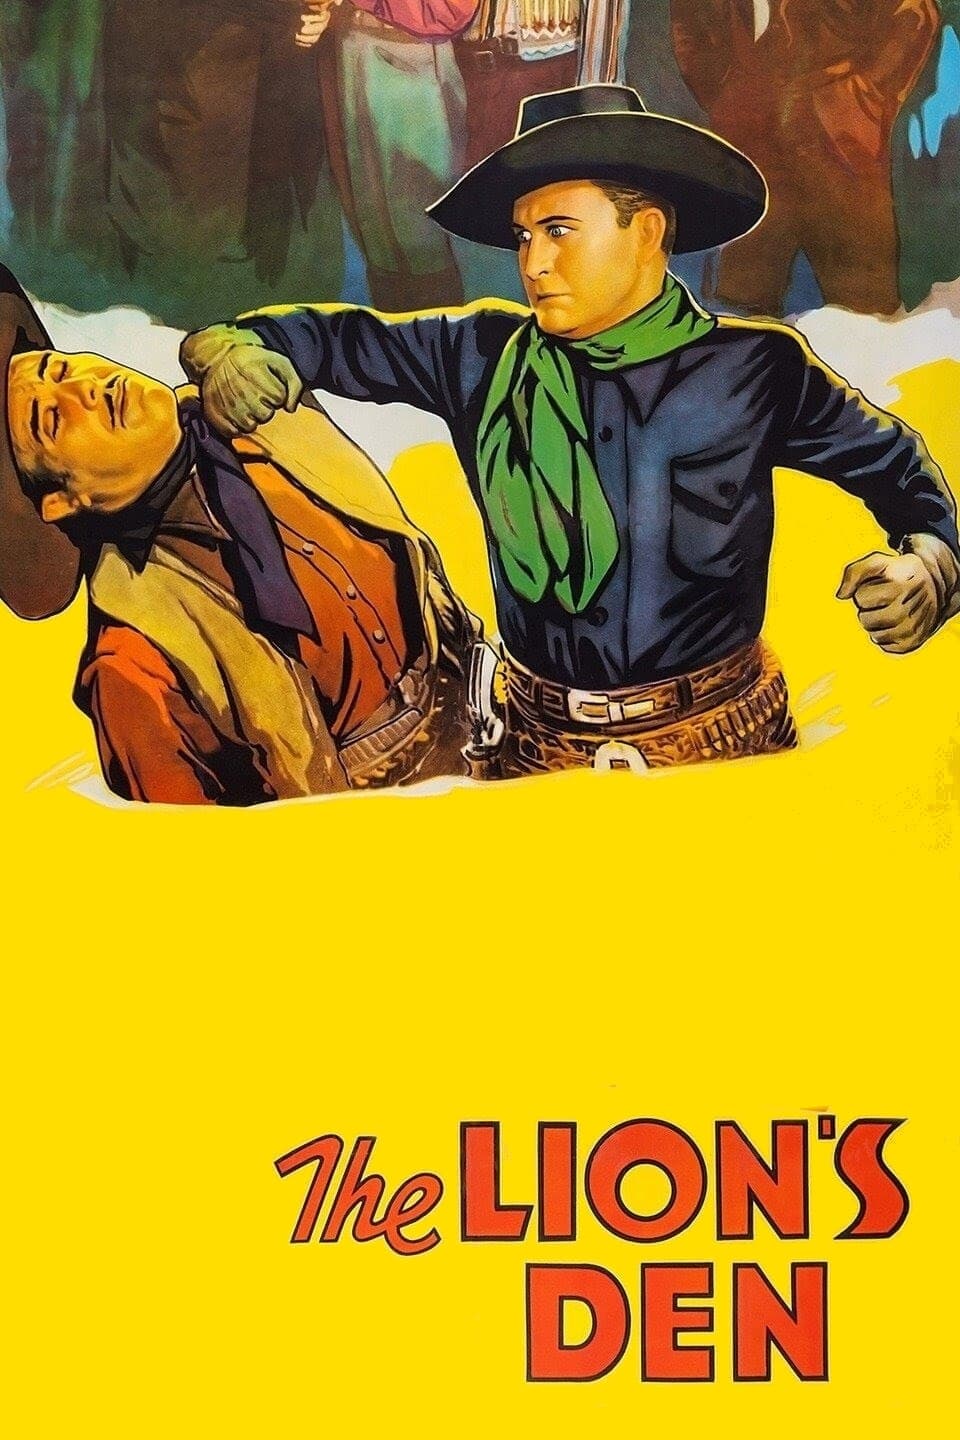 The Lion's Den (1936)